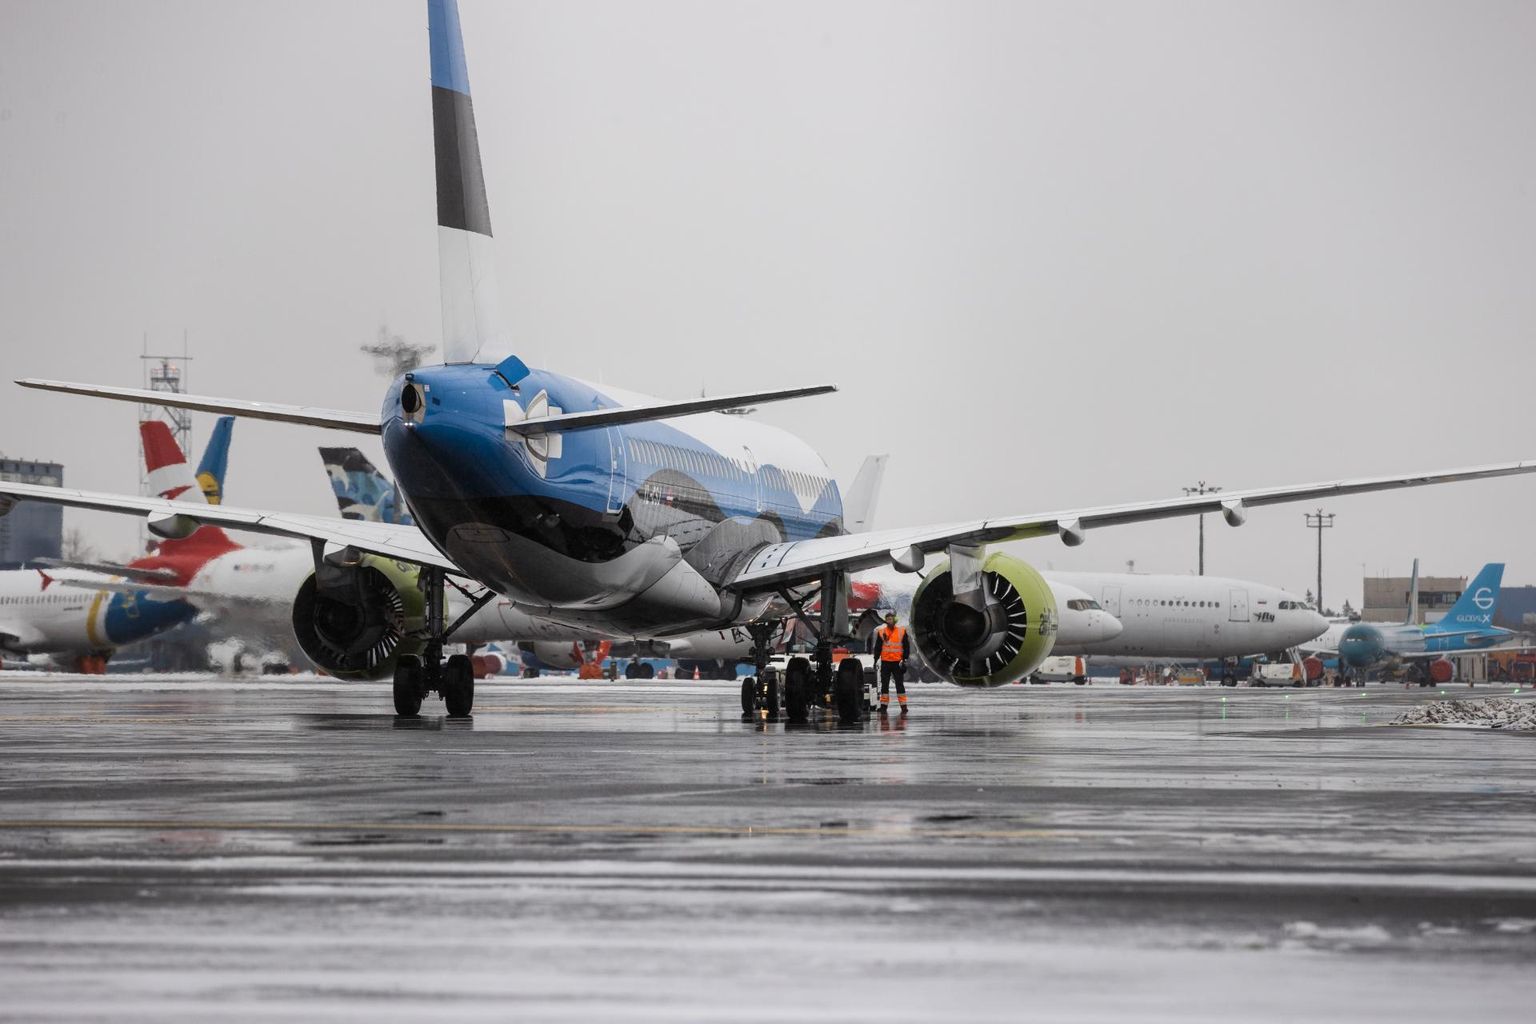 Tallinna lennujaam jäi eelmisel aastal kahe miljoni euroga kahjumisse, mis oli prognoositust parem tulemus.